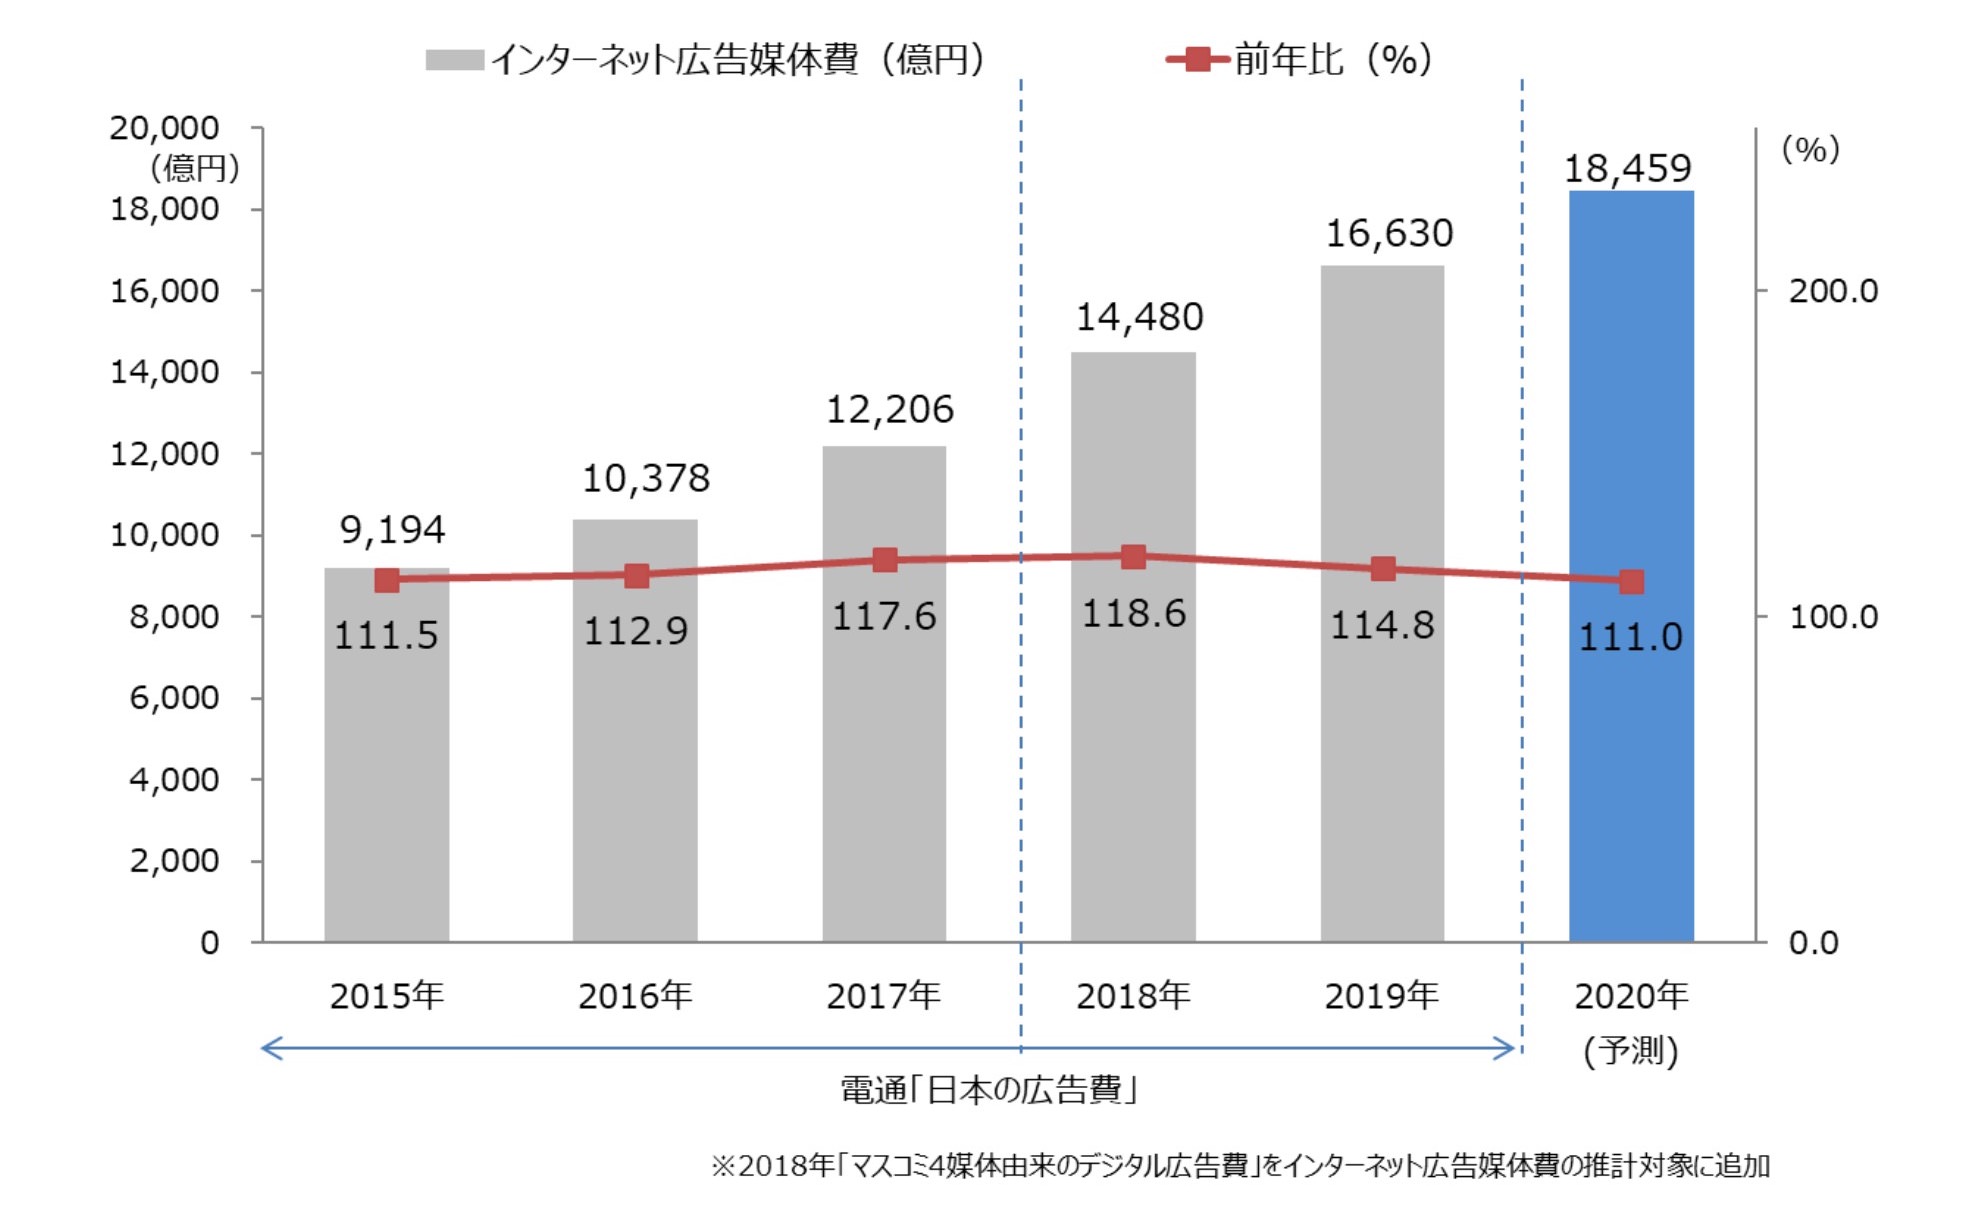 2019年 日本の広告費 インターネット広告媒体費 詳細分析